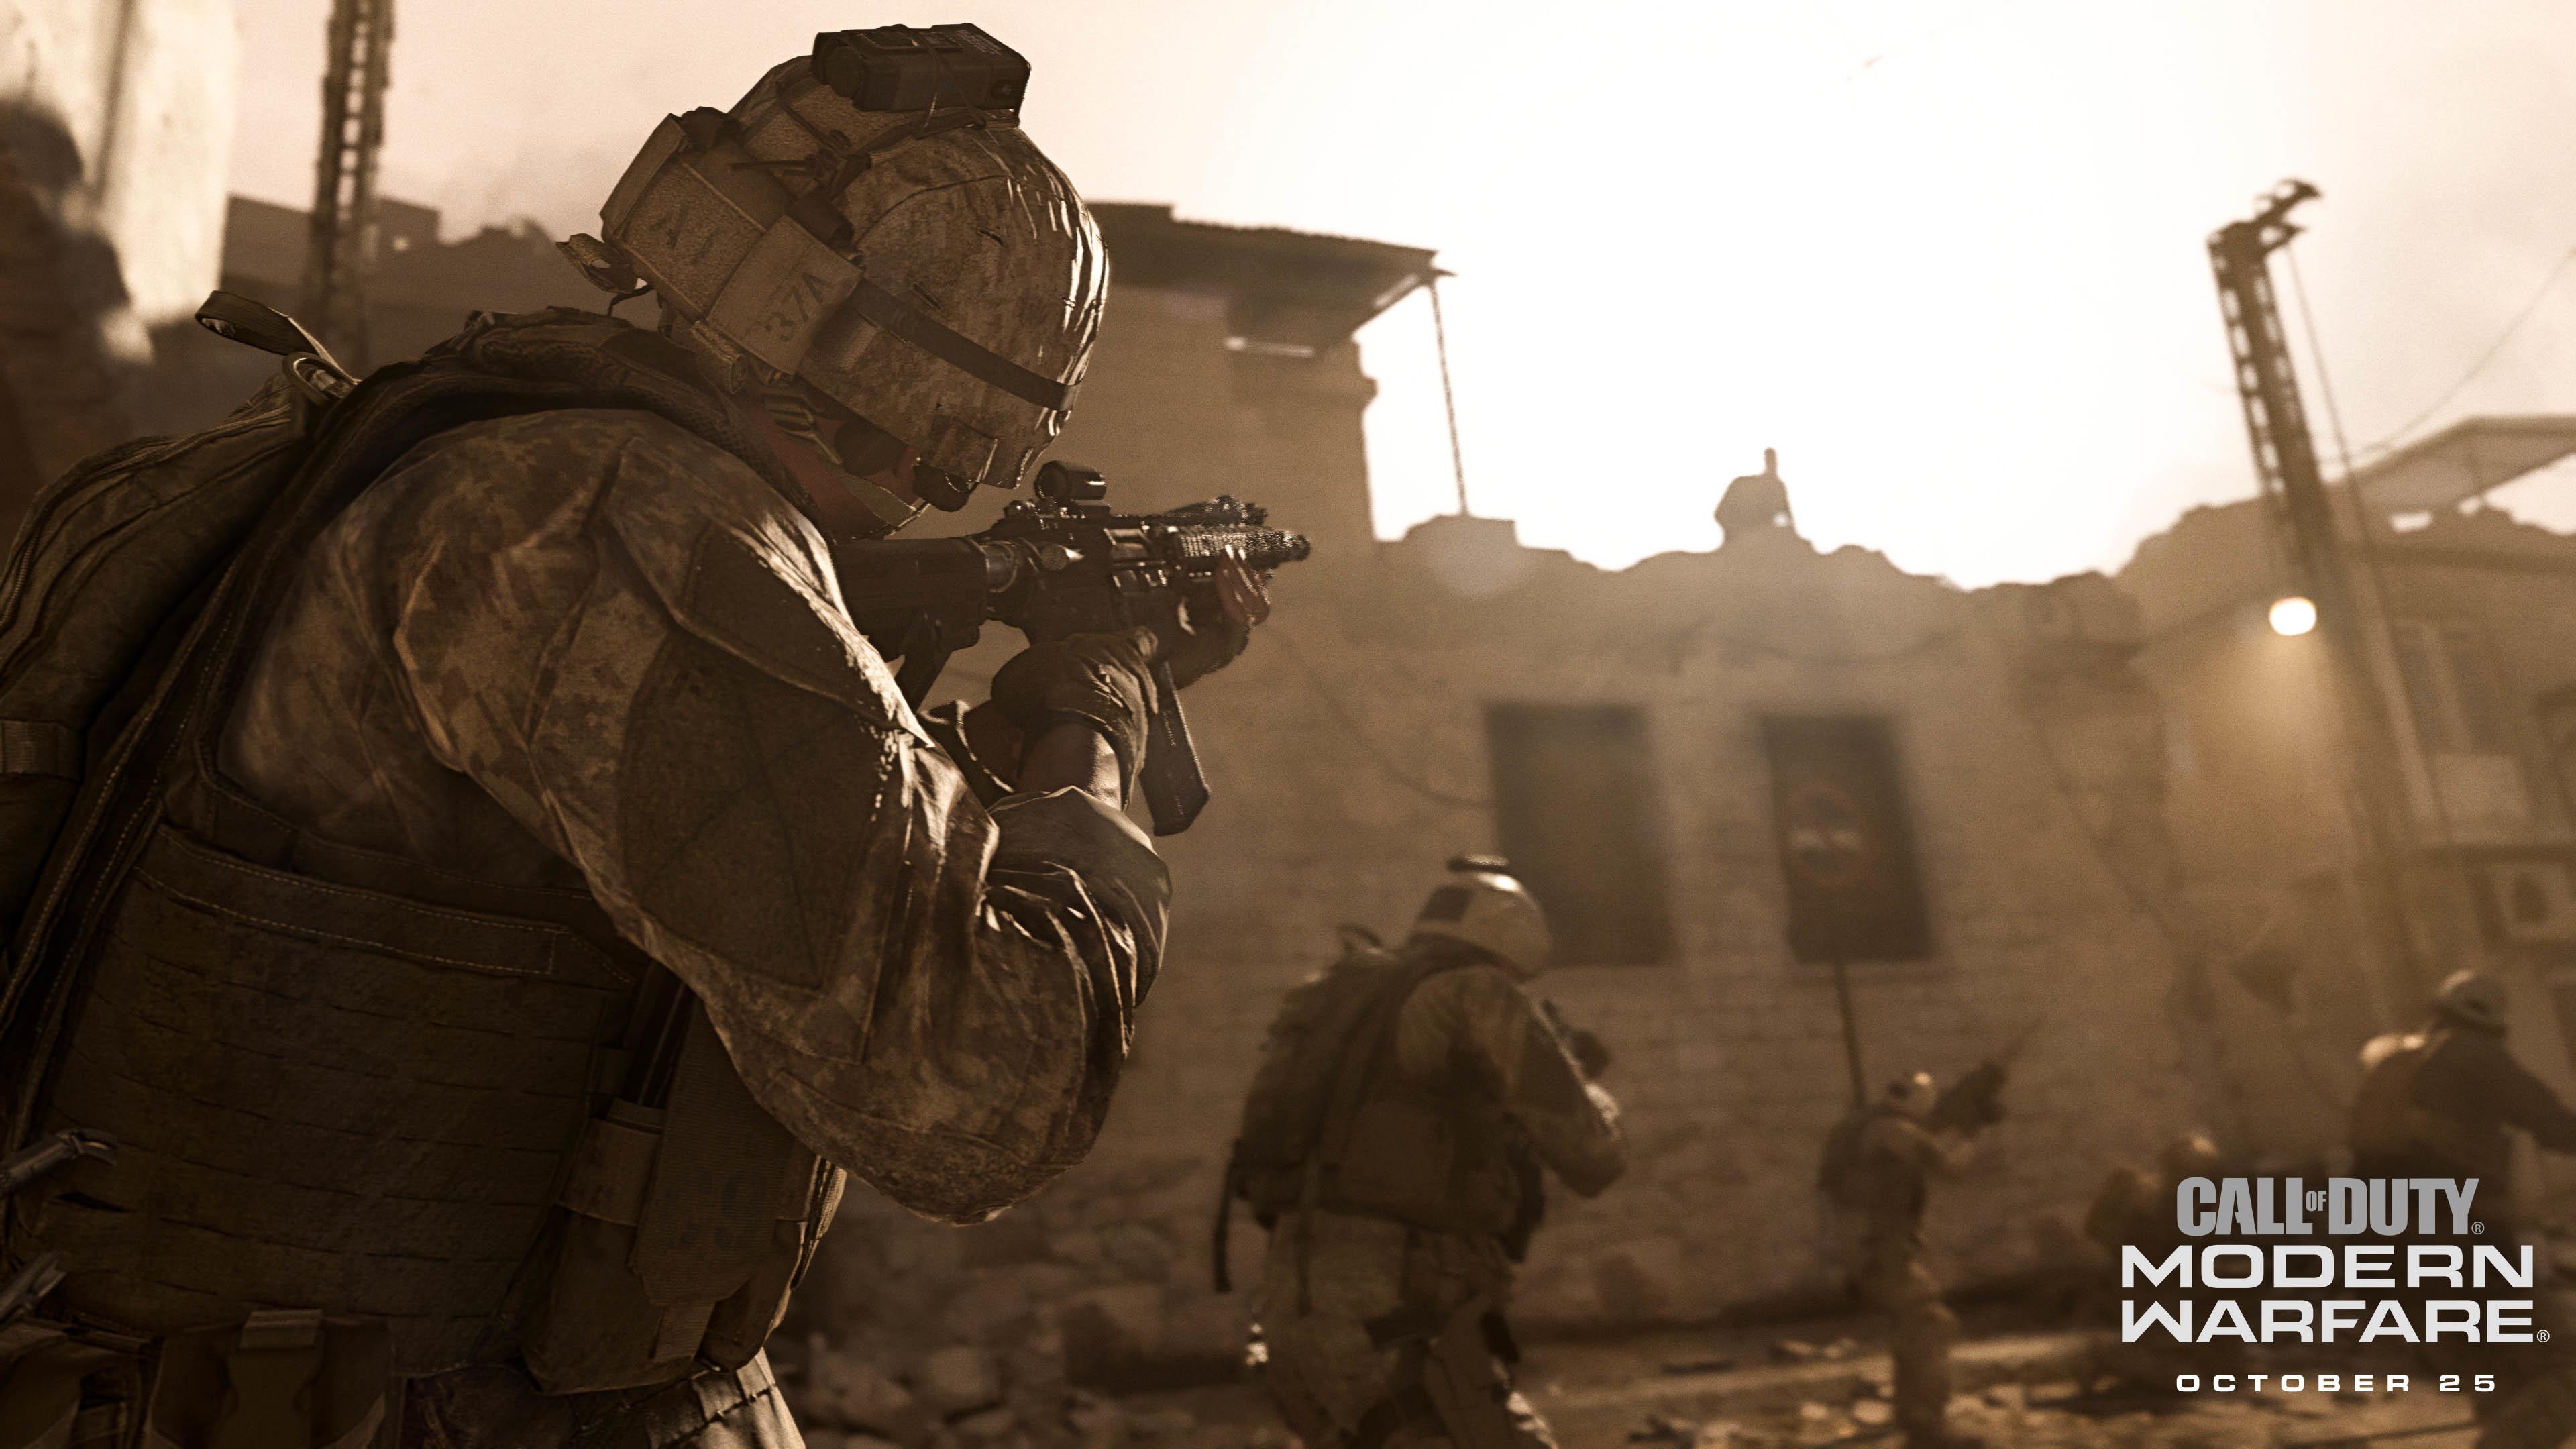 2019's Call Of Duty Is A Reboot Of Modern Warfare, Release Date Set